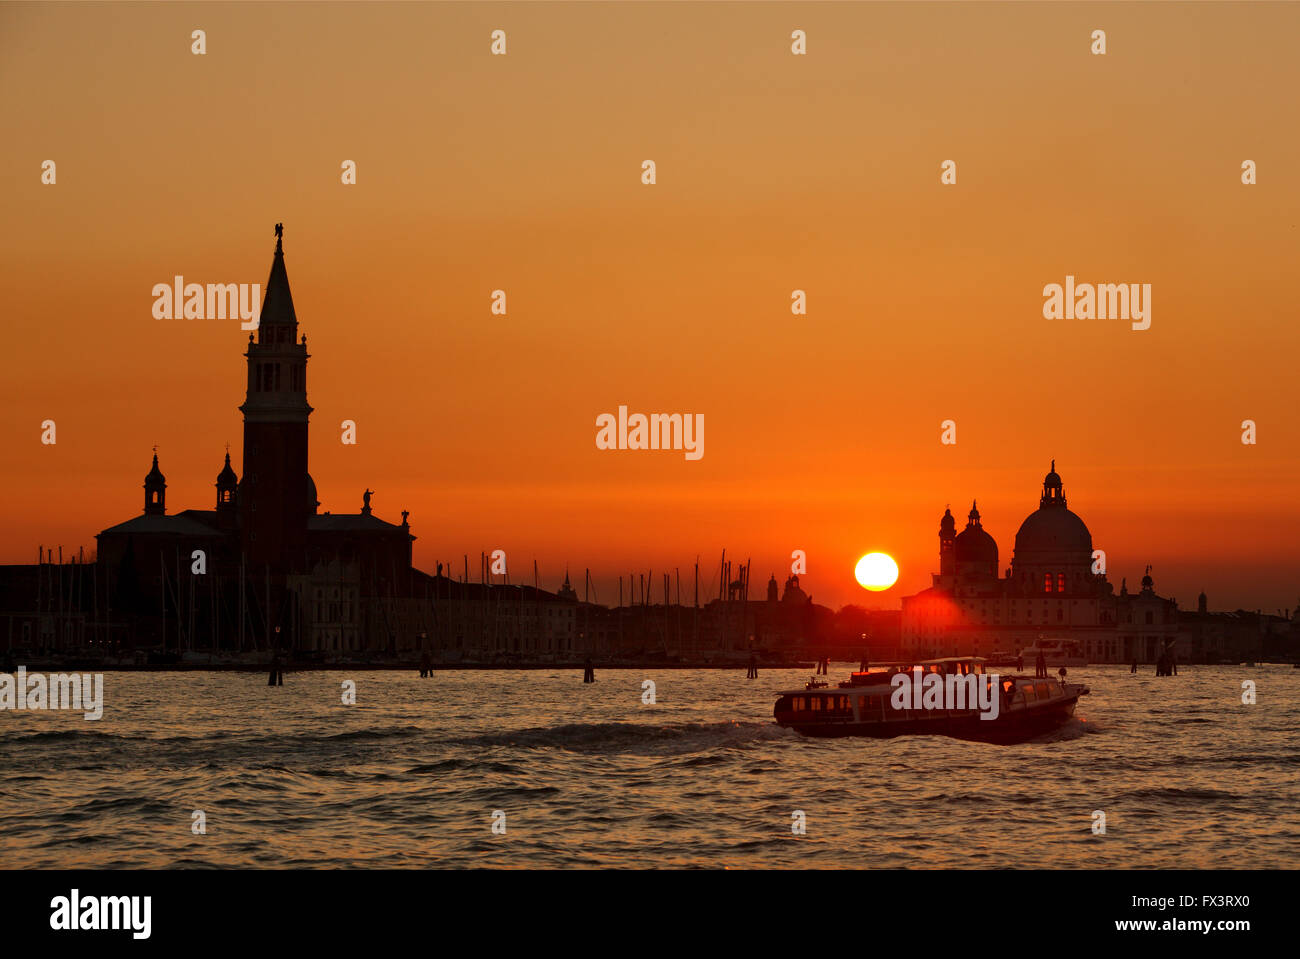 Sunset in Sestiere di Castello, Venice (Venezia) Italy. Stock Photo